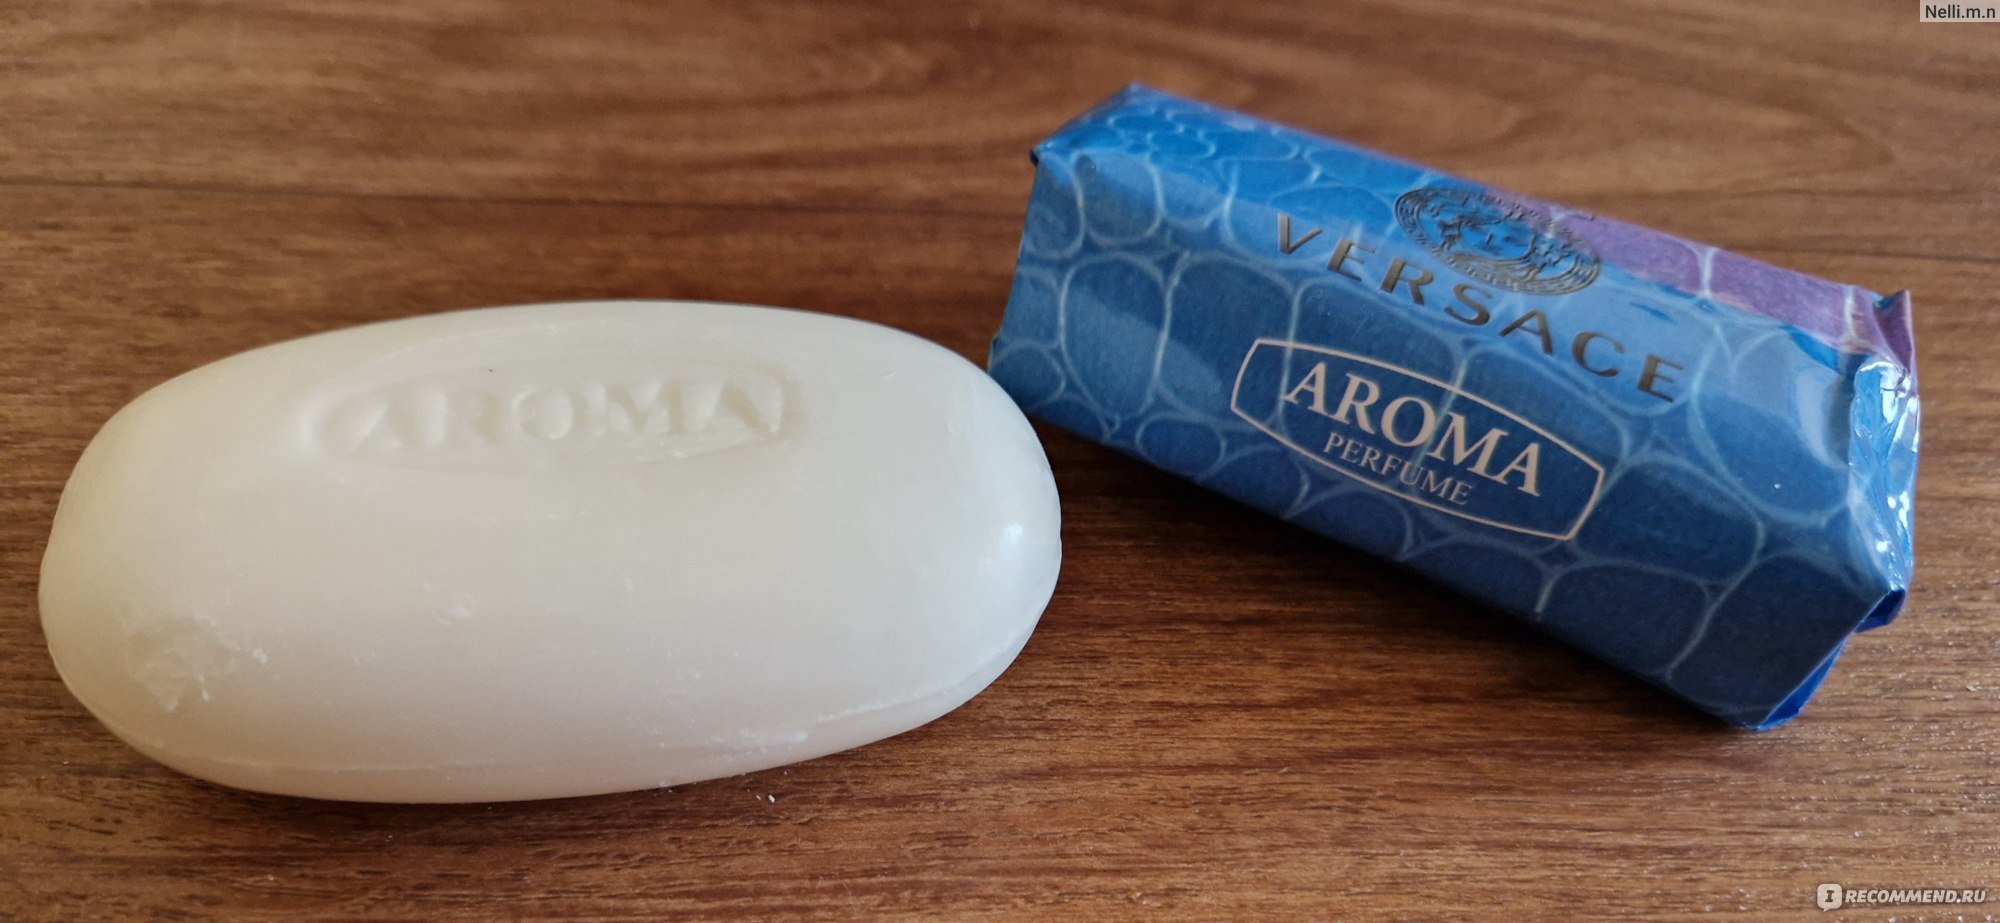 Подарочное ароматное мыло из Прованса купить в интернет-магазине Vivacité